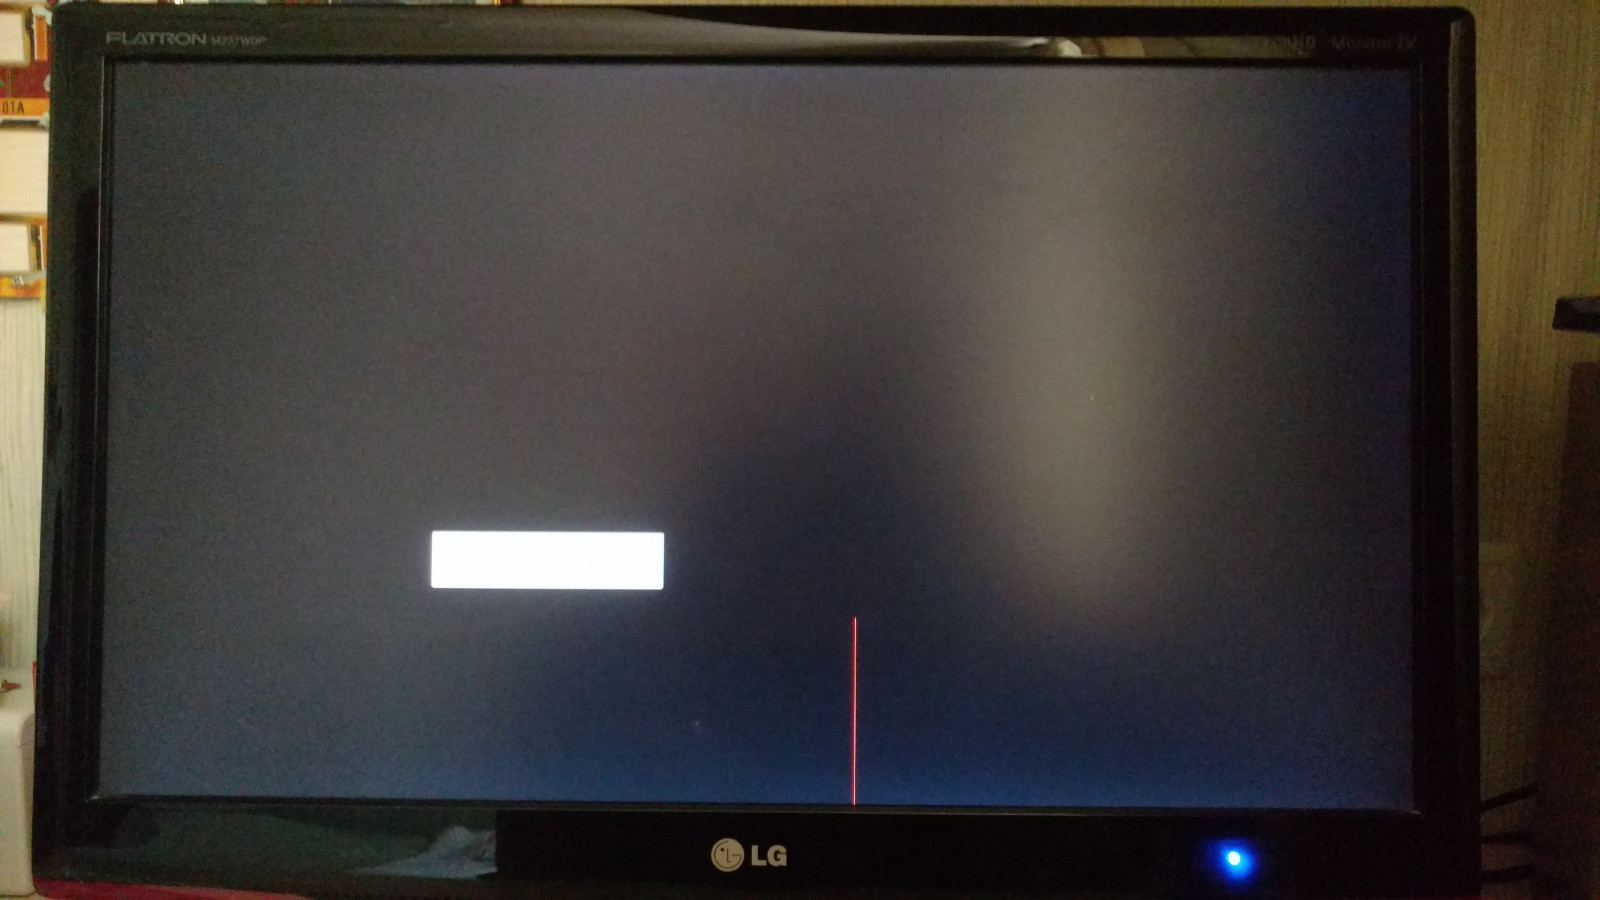 Черные горизонтальные полосы на экране монитора